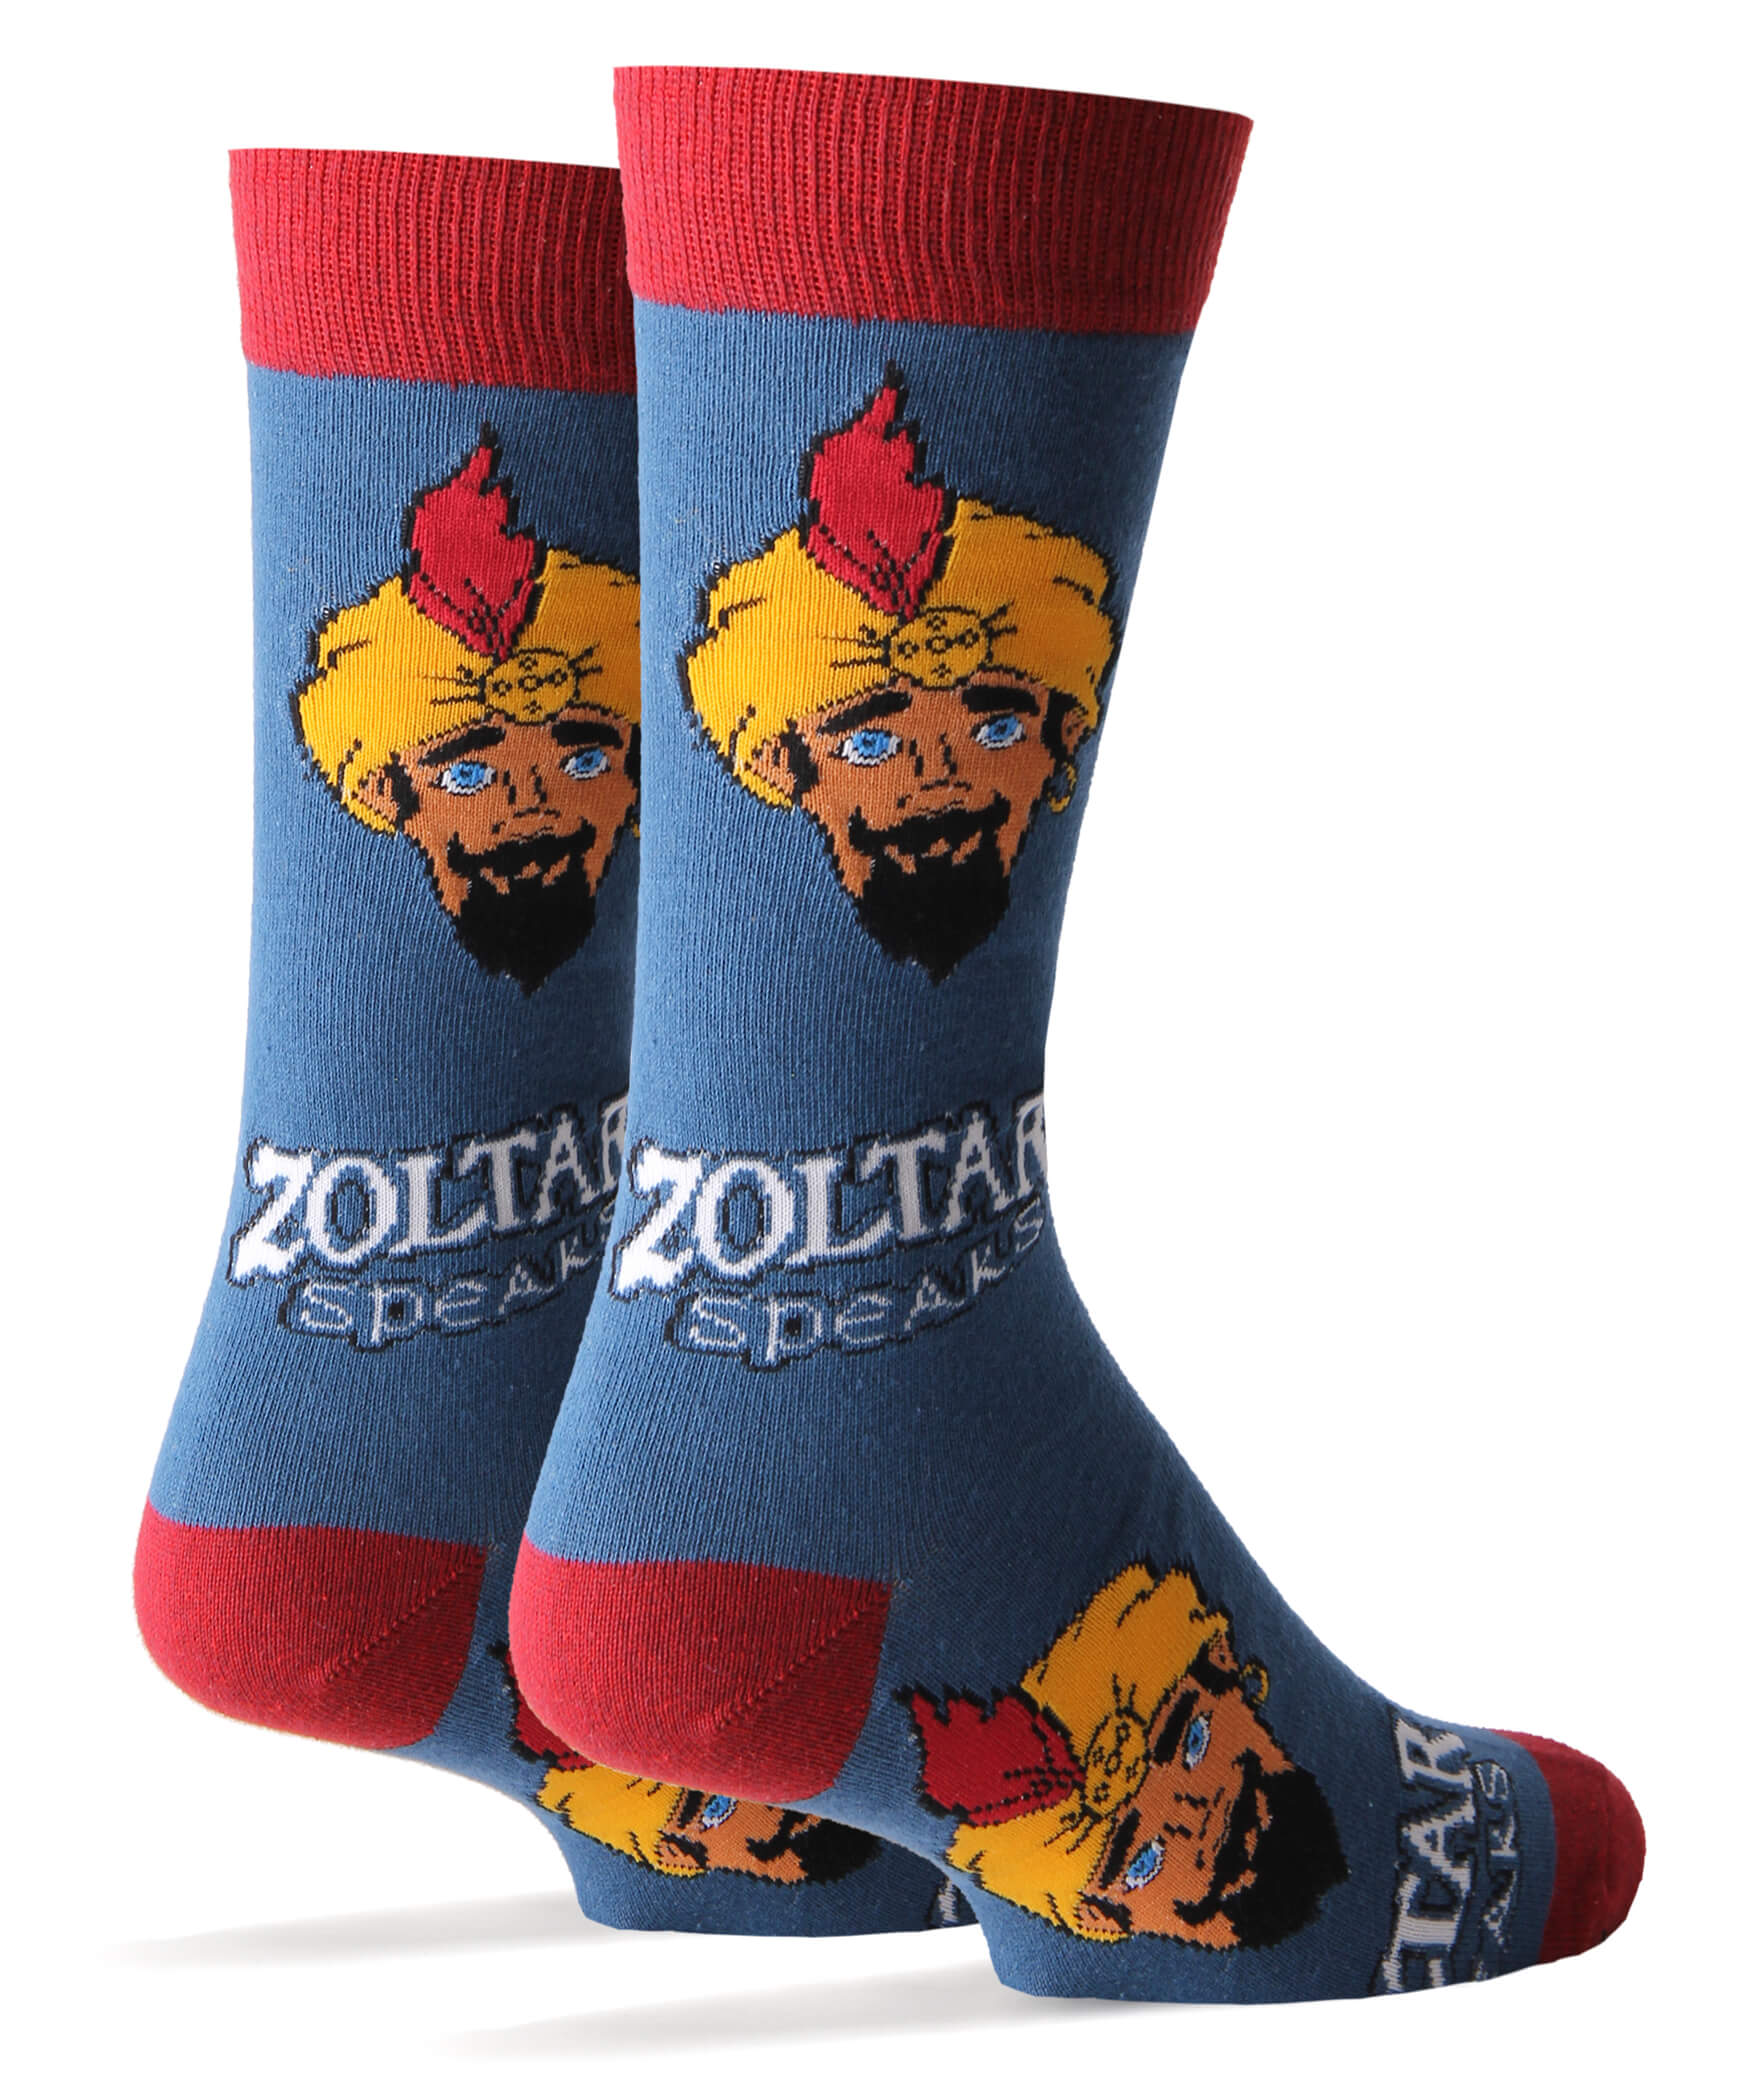 Zoltar Speaks Again Socks - 0